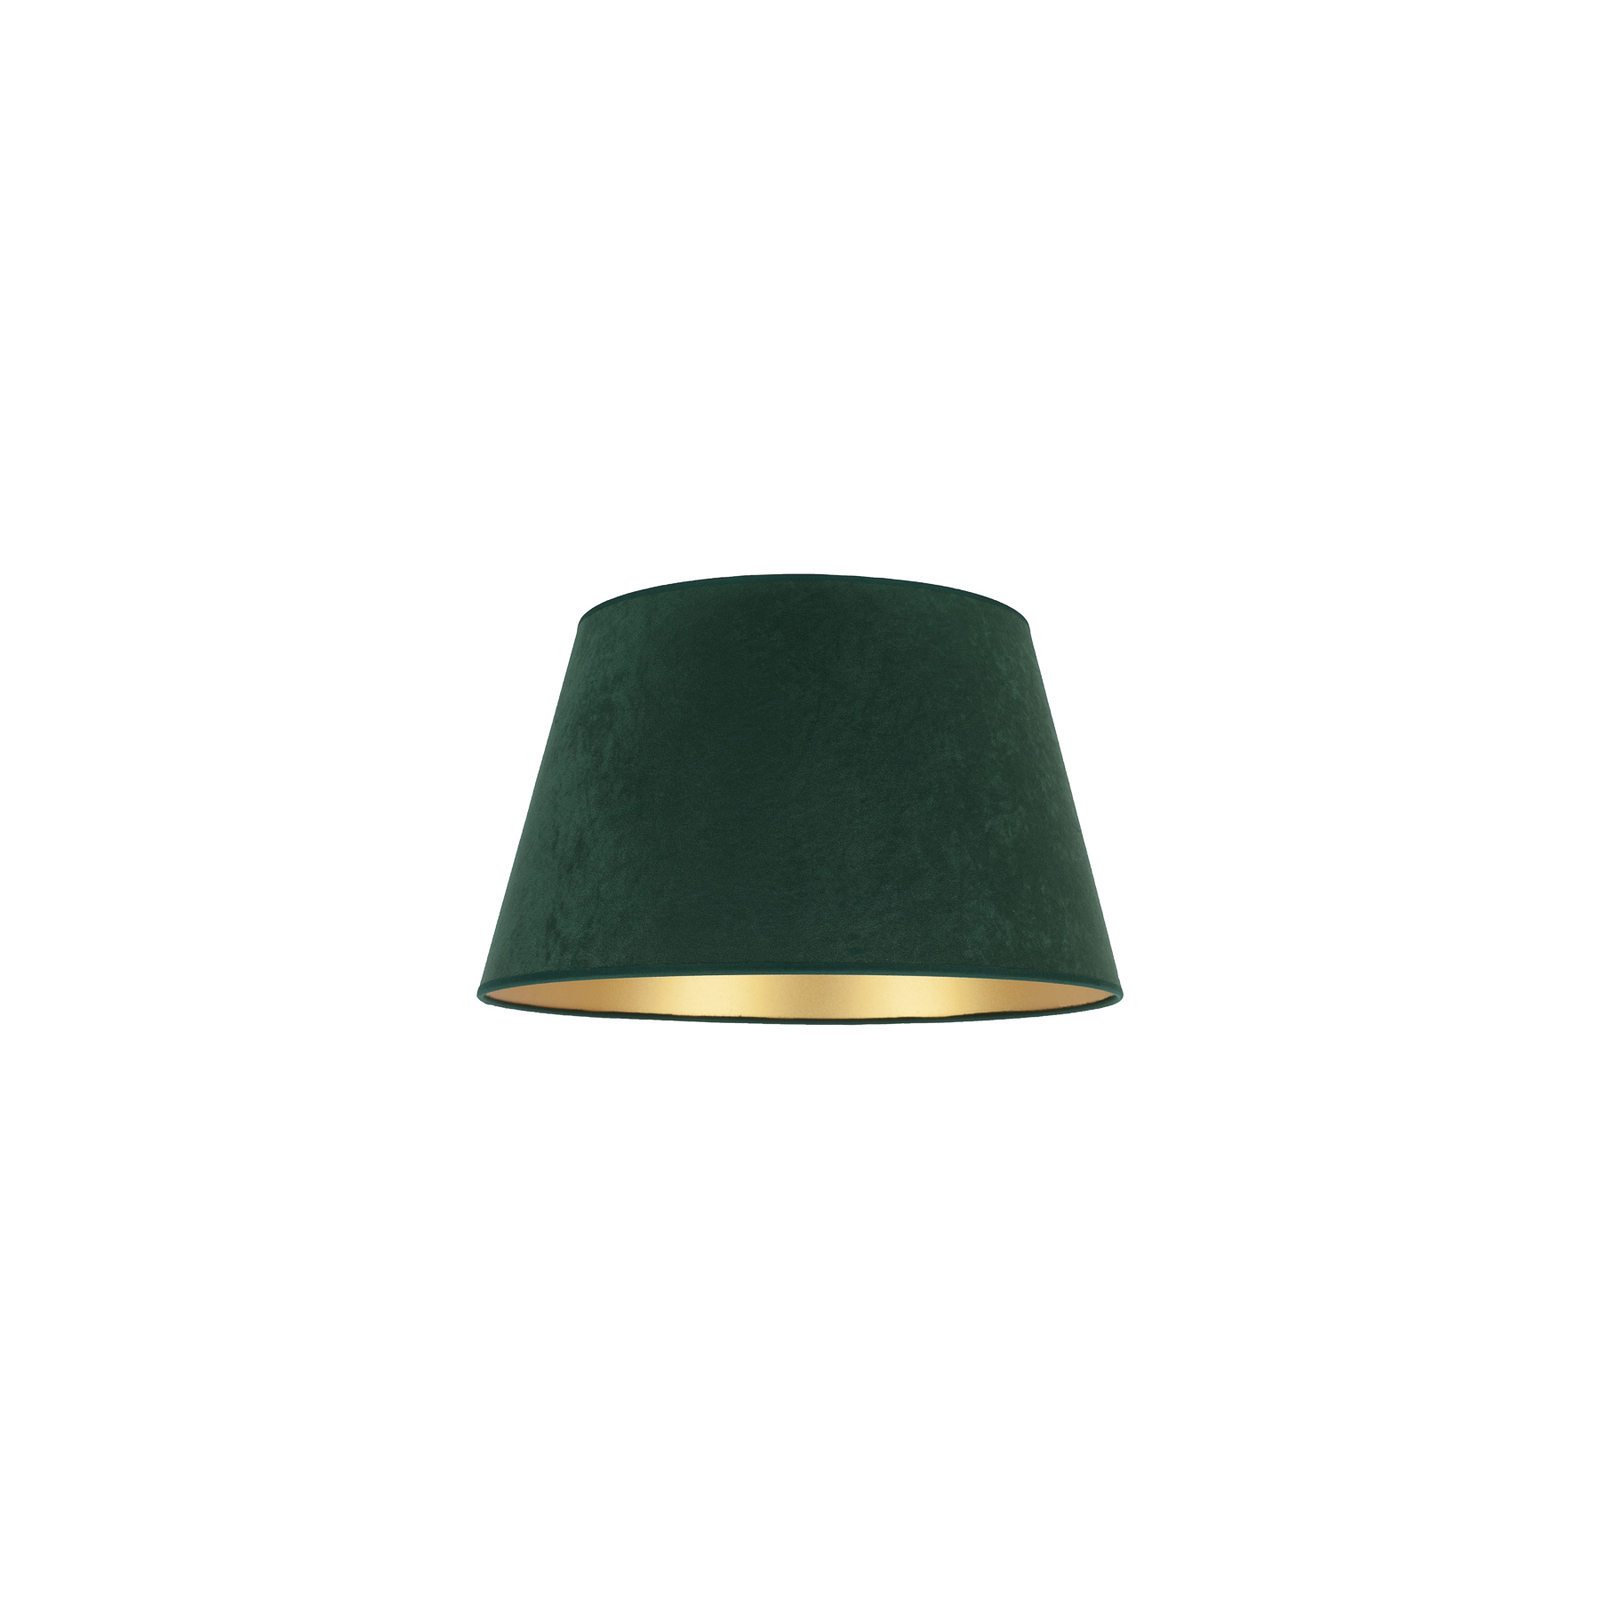 Stínidlo na lampu Cone výška 18 cm, zelená/zlatá